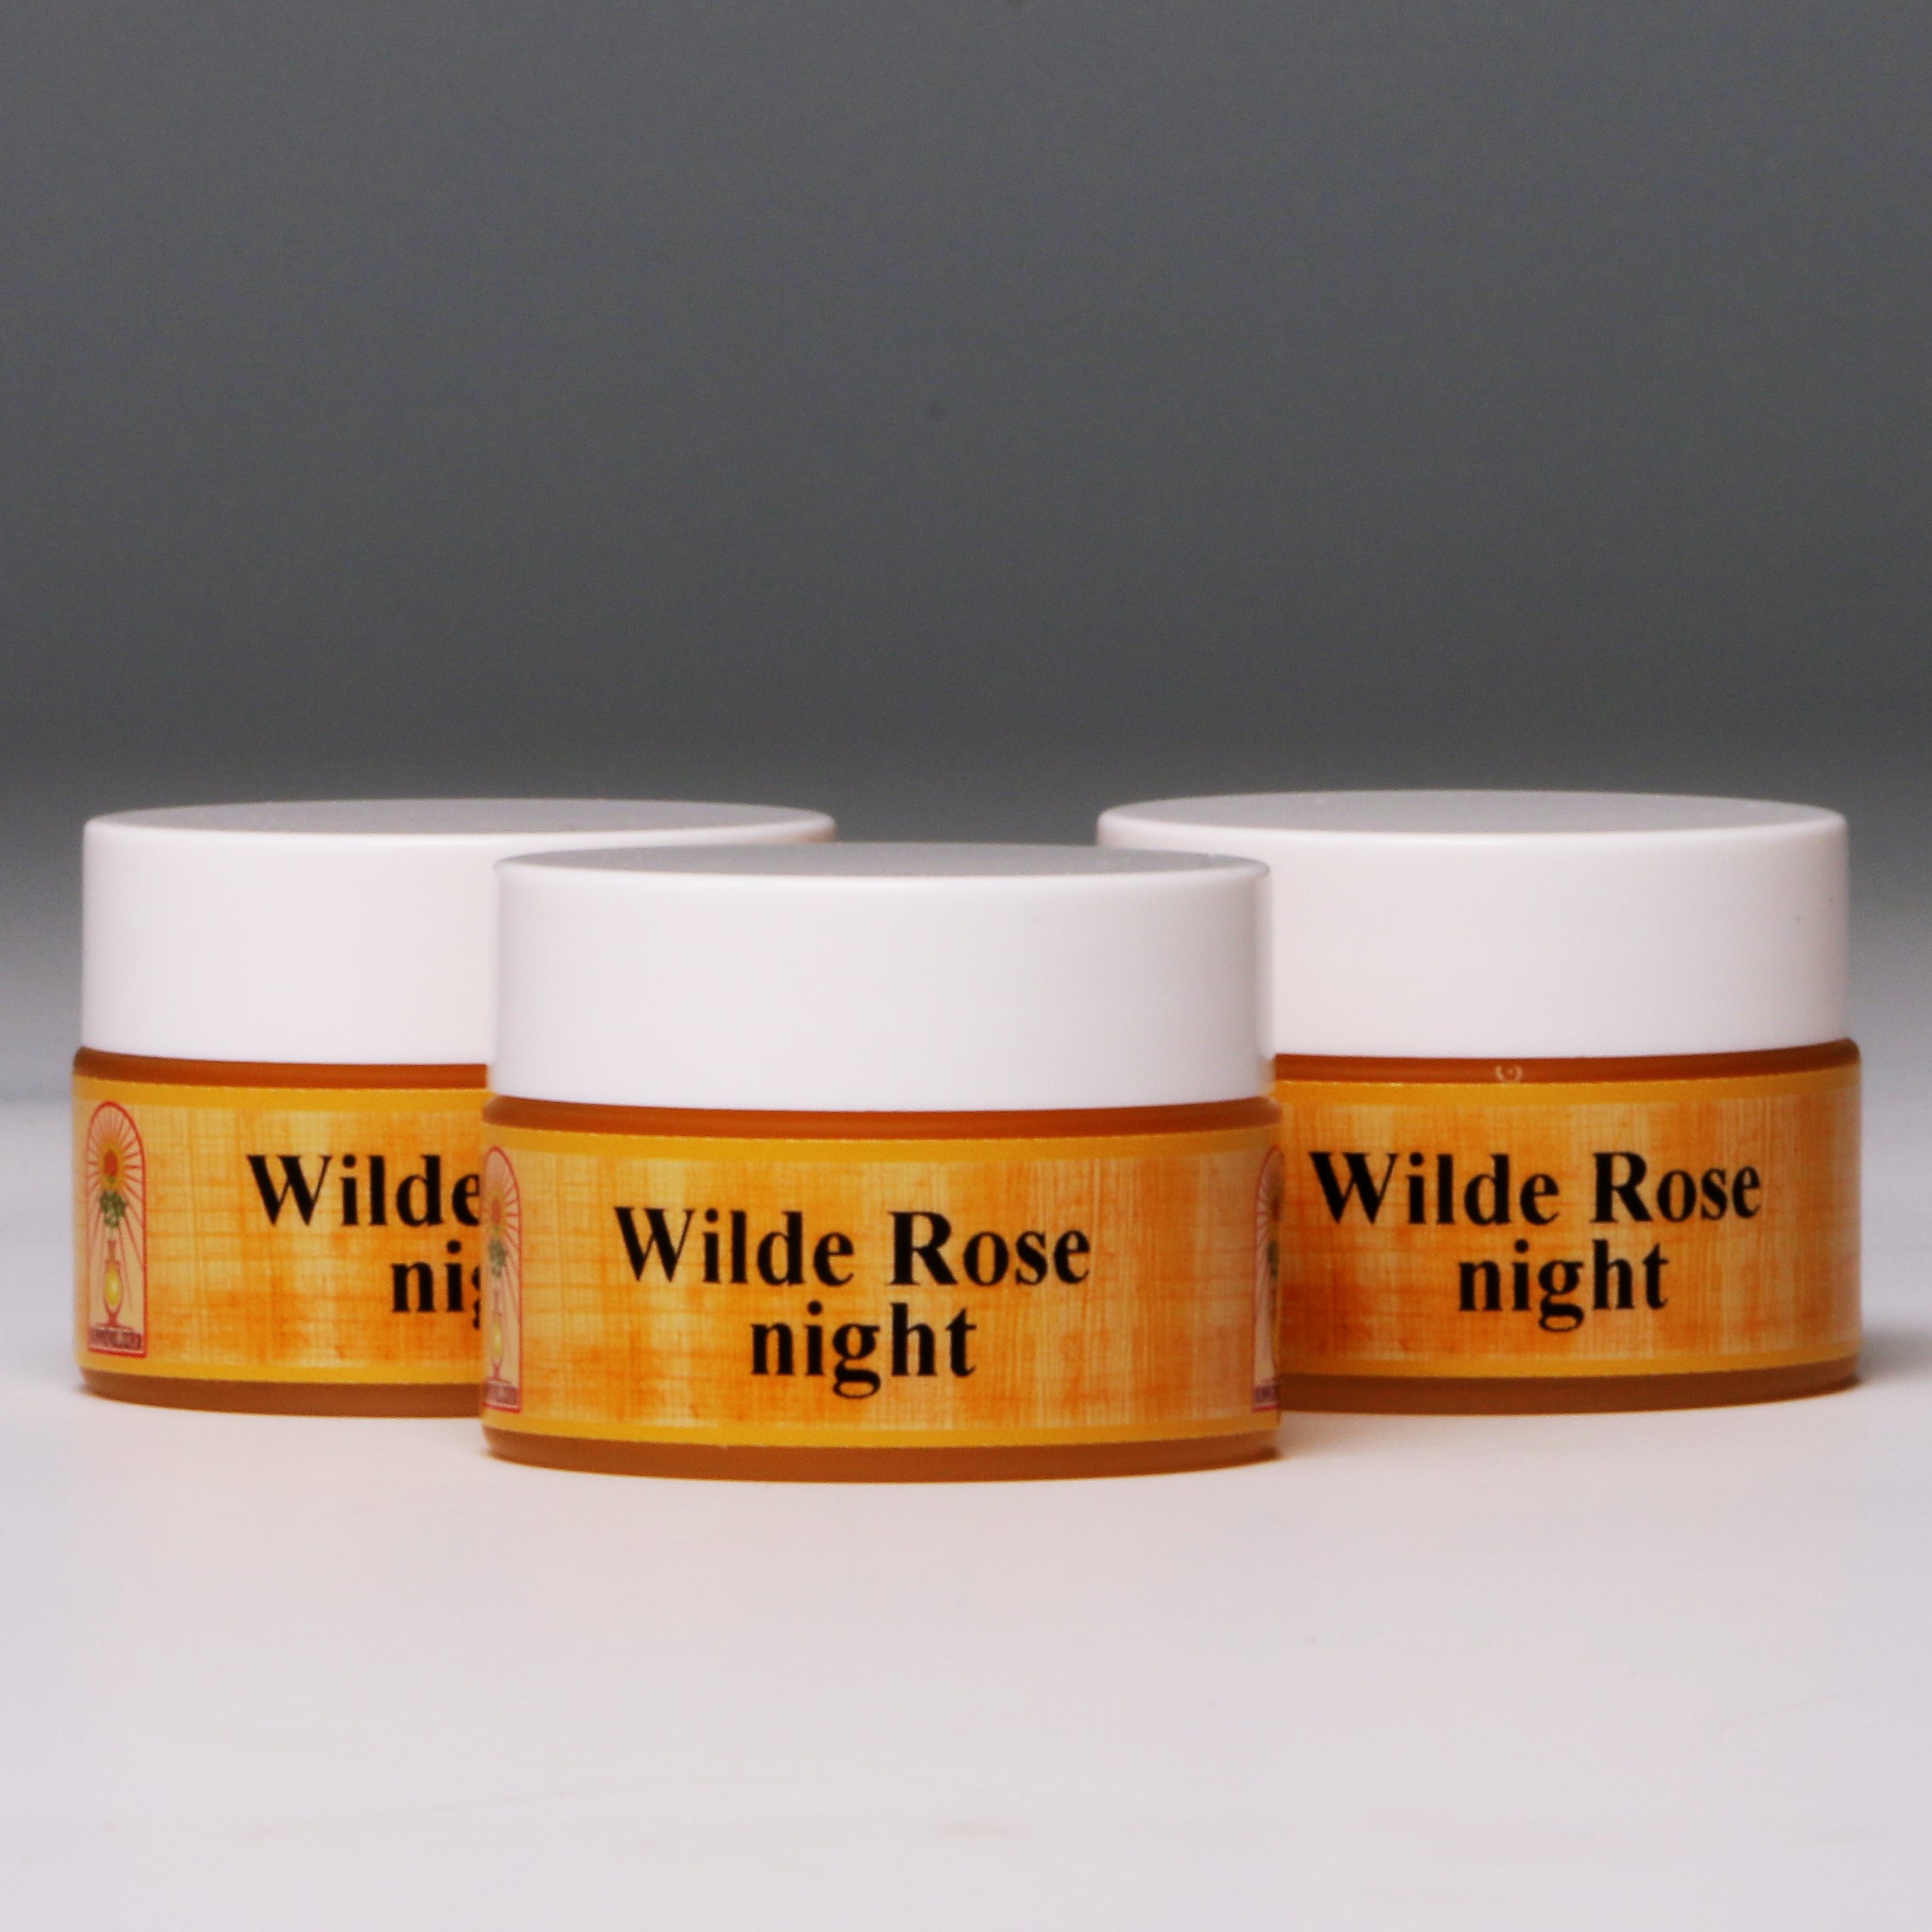 Wilde Rose night Gesichtscreme (3x15ml)  günstig bestellen bei 